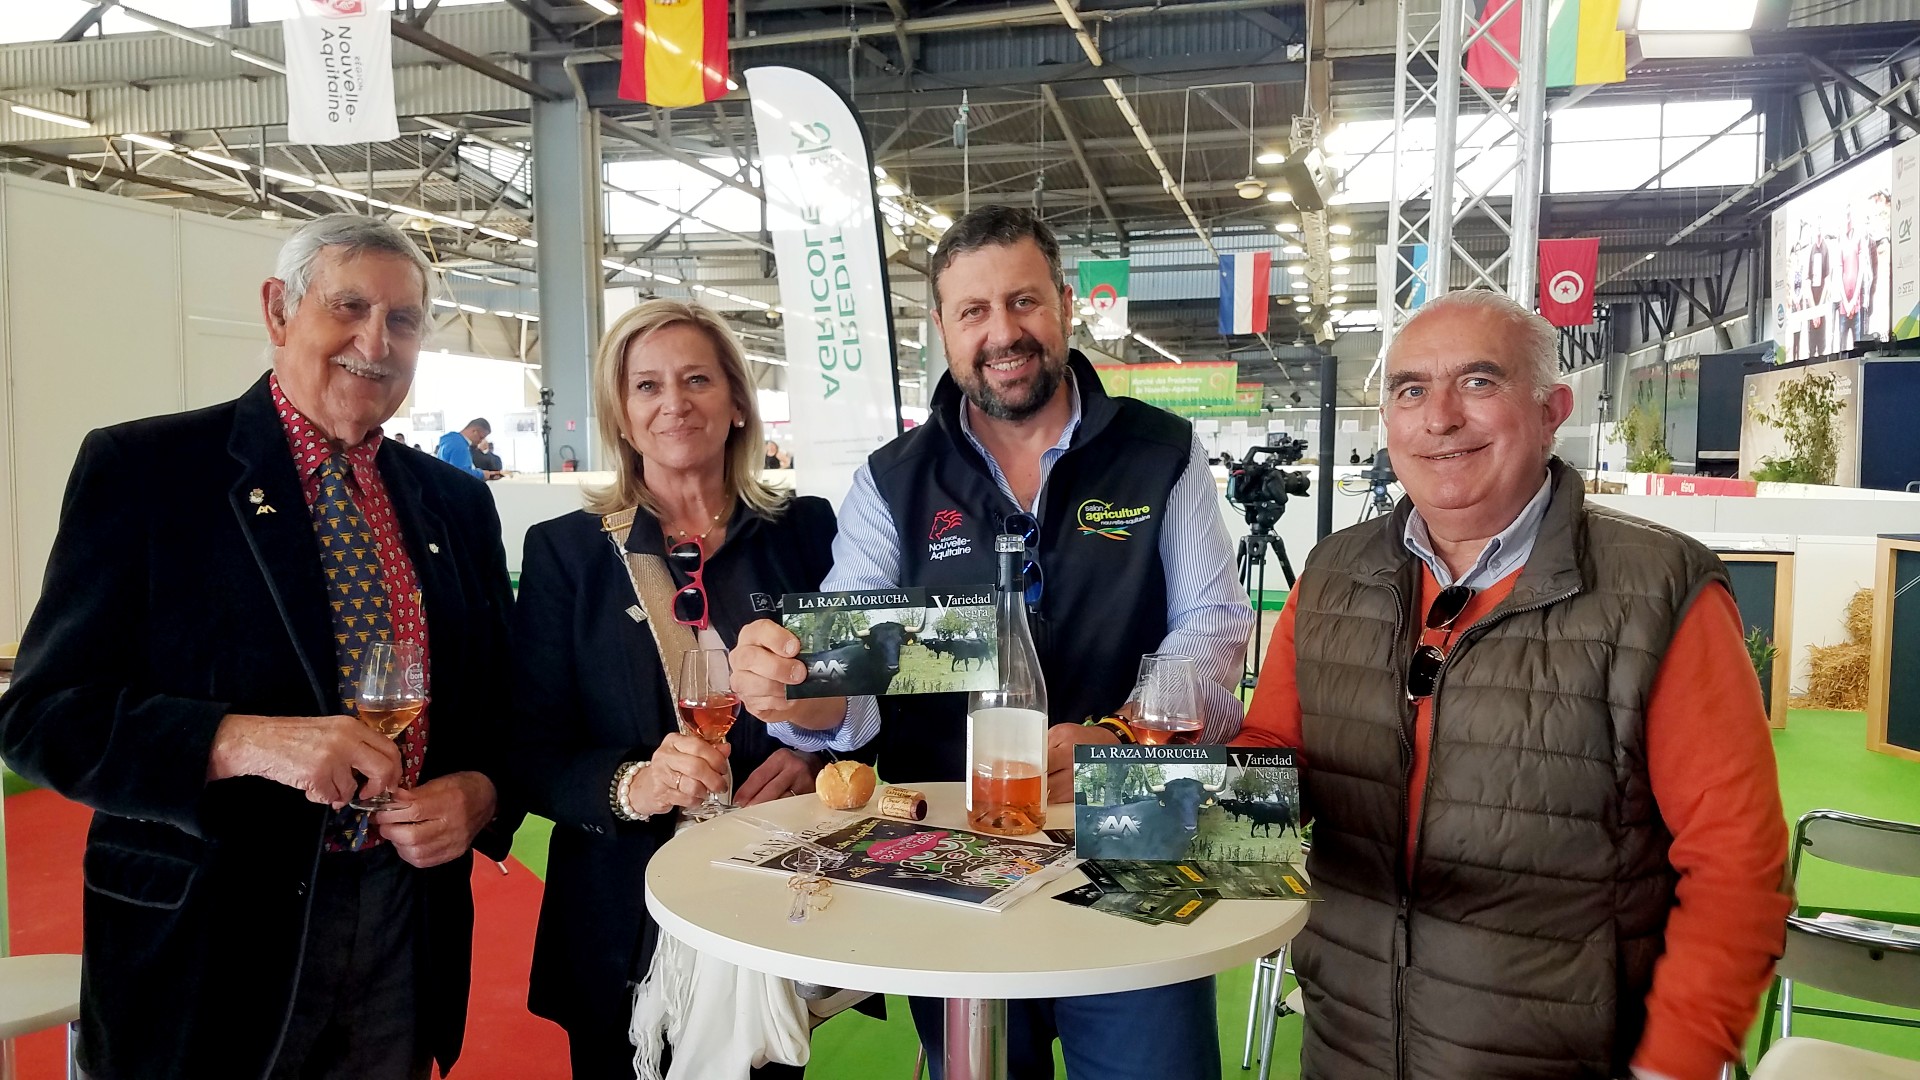 La délégation espagnole venue présenter la race Morucha sur le Salon de l'agriculture de Nouvelle-Aquitaine